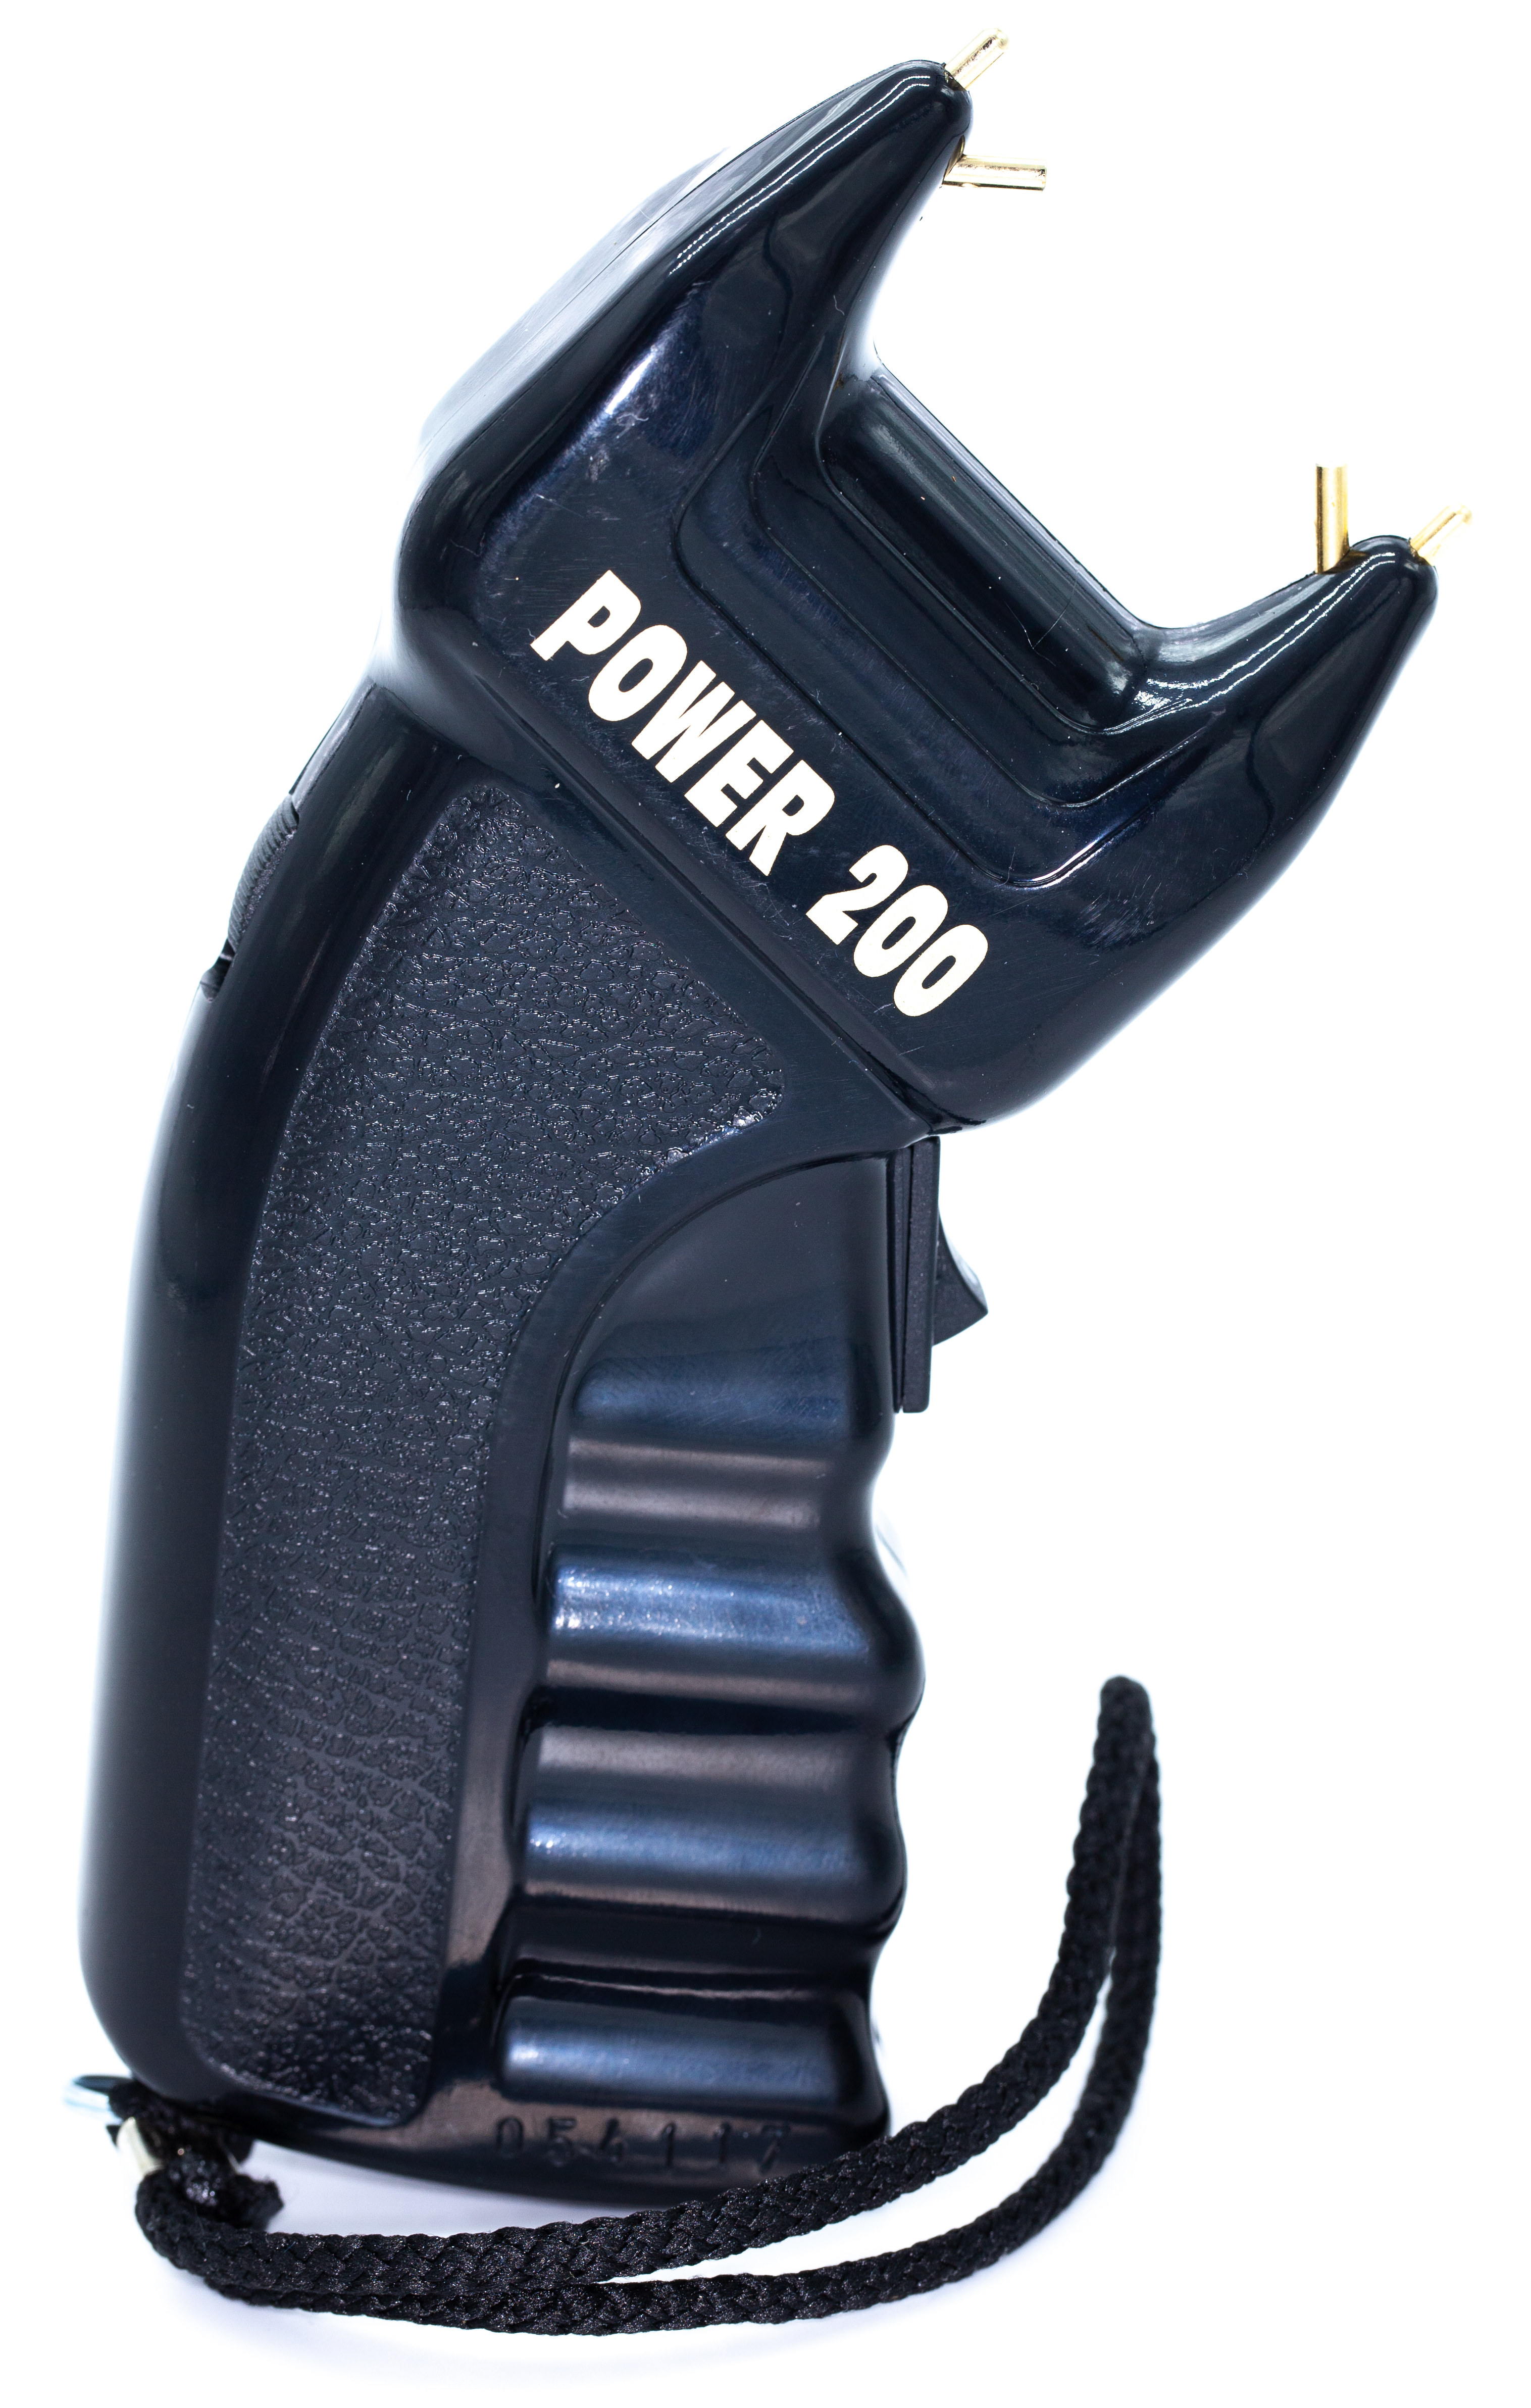 Elektroschocker Power 200 PTB zur Selbstverteidigung